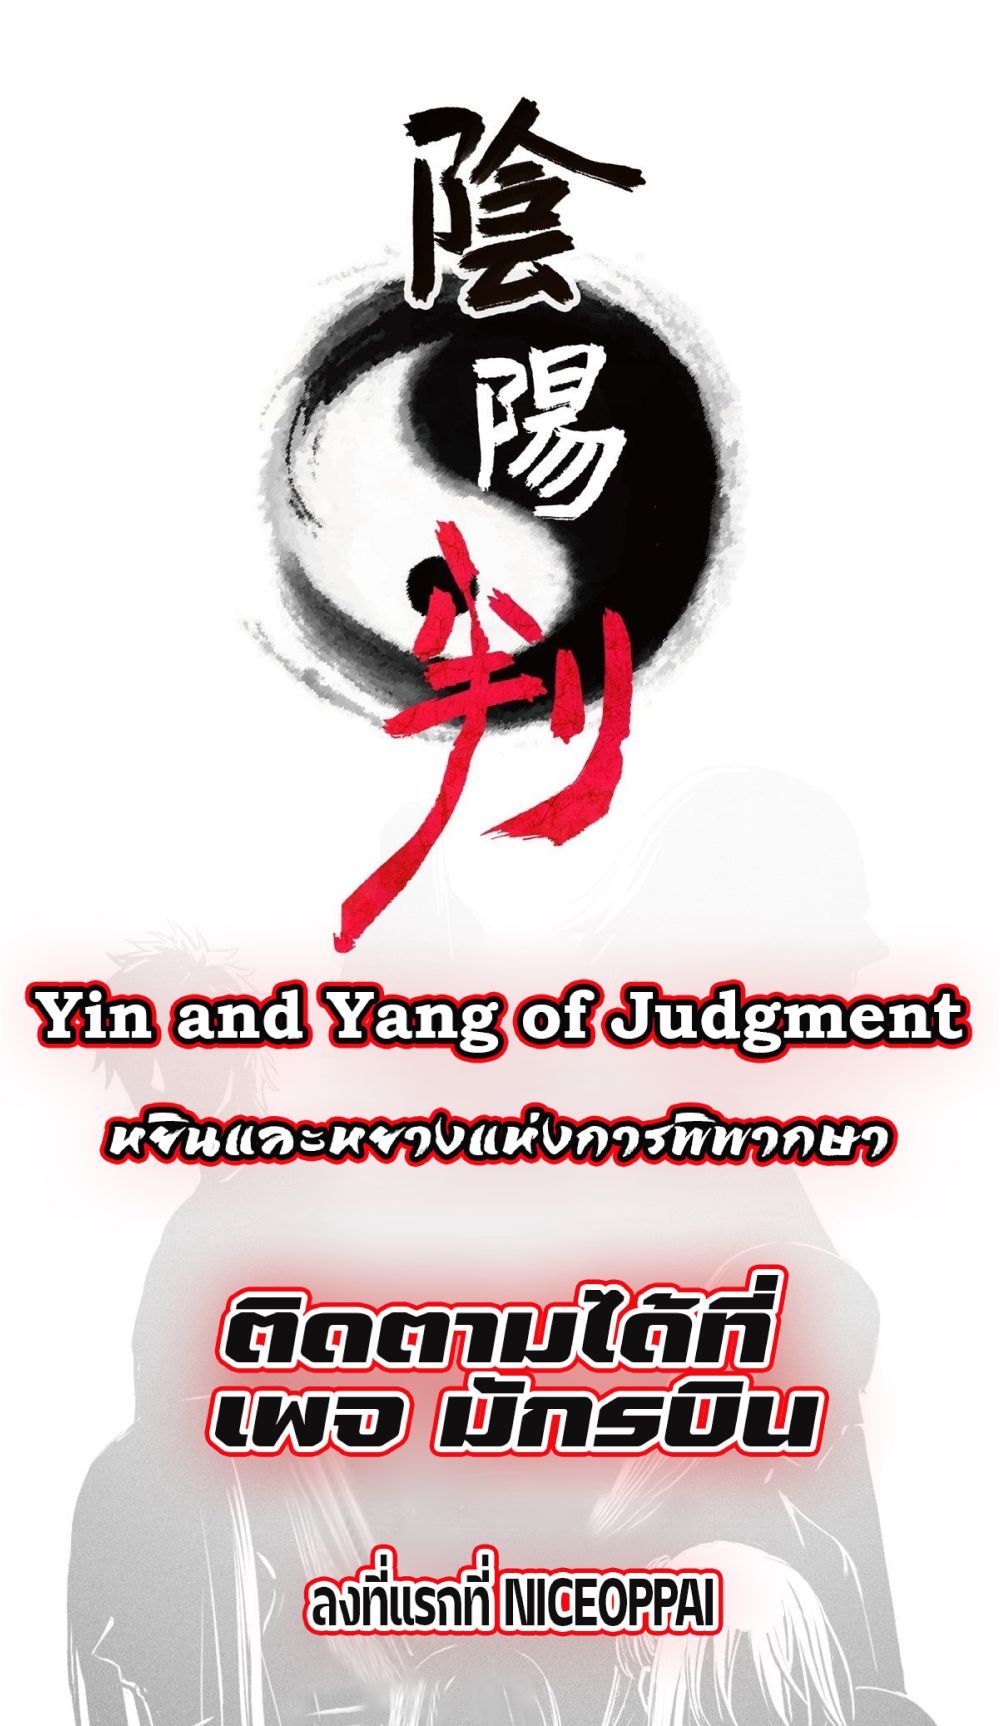 Yin and Yang Judgment 0 (1)